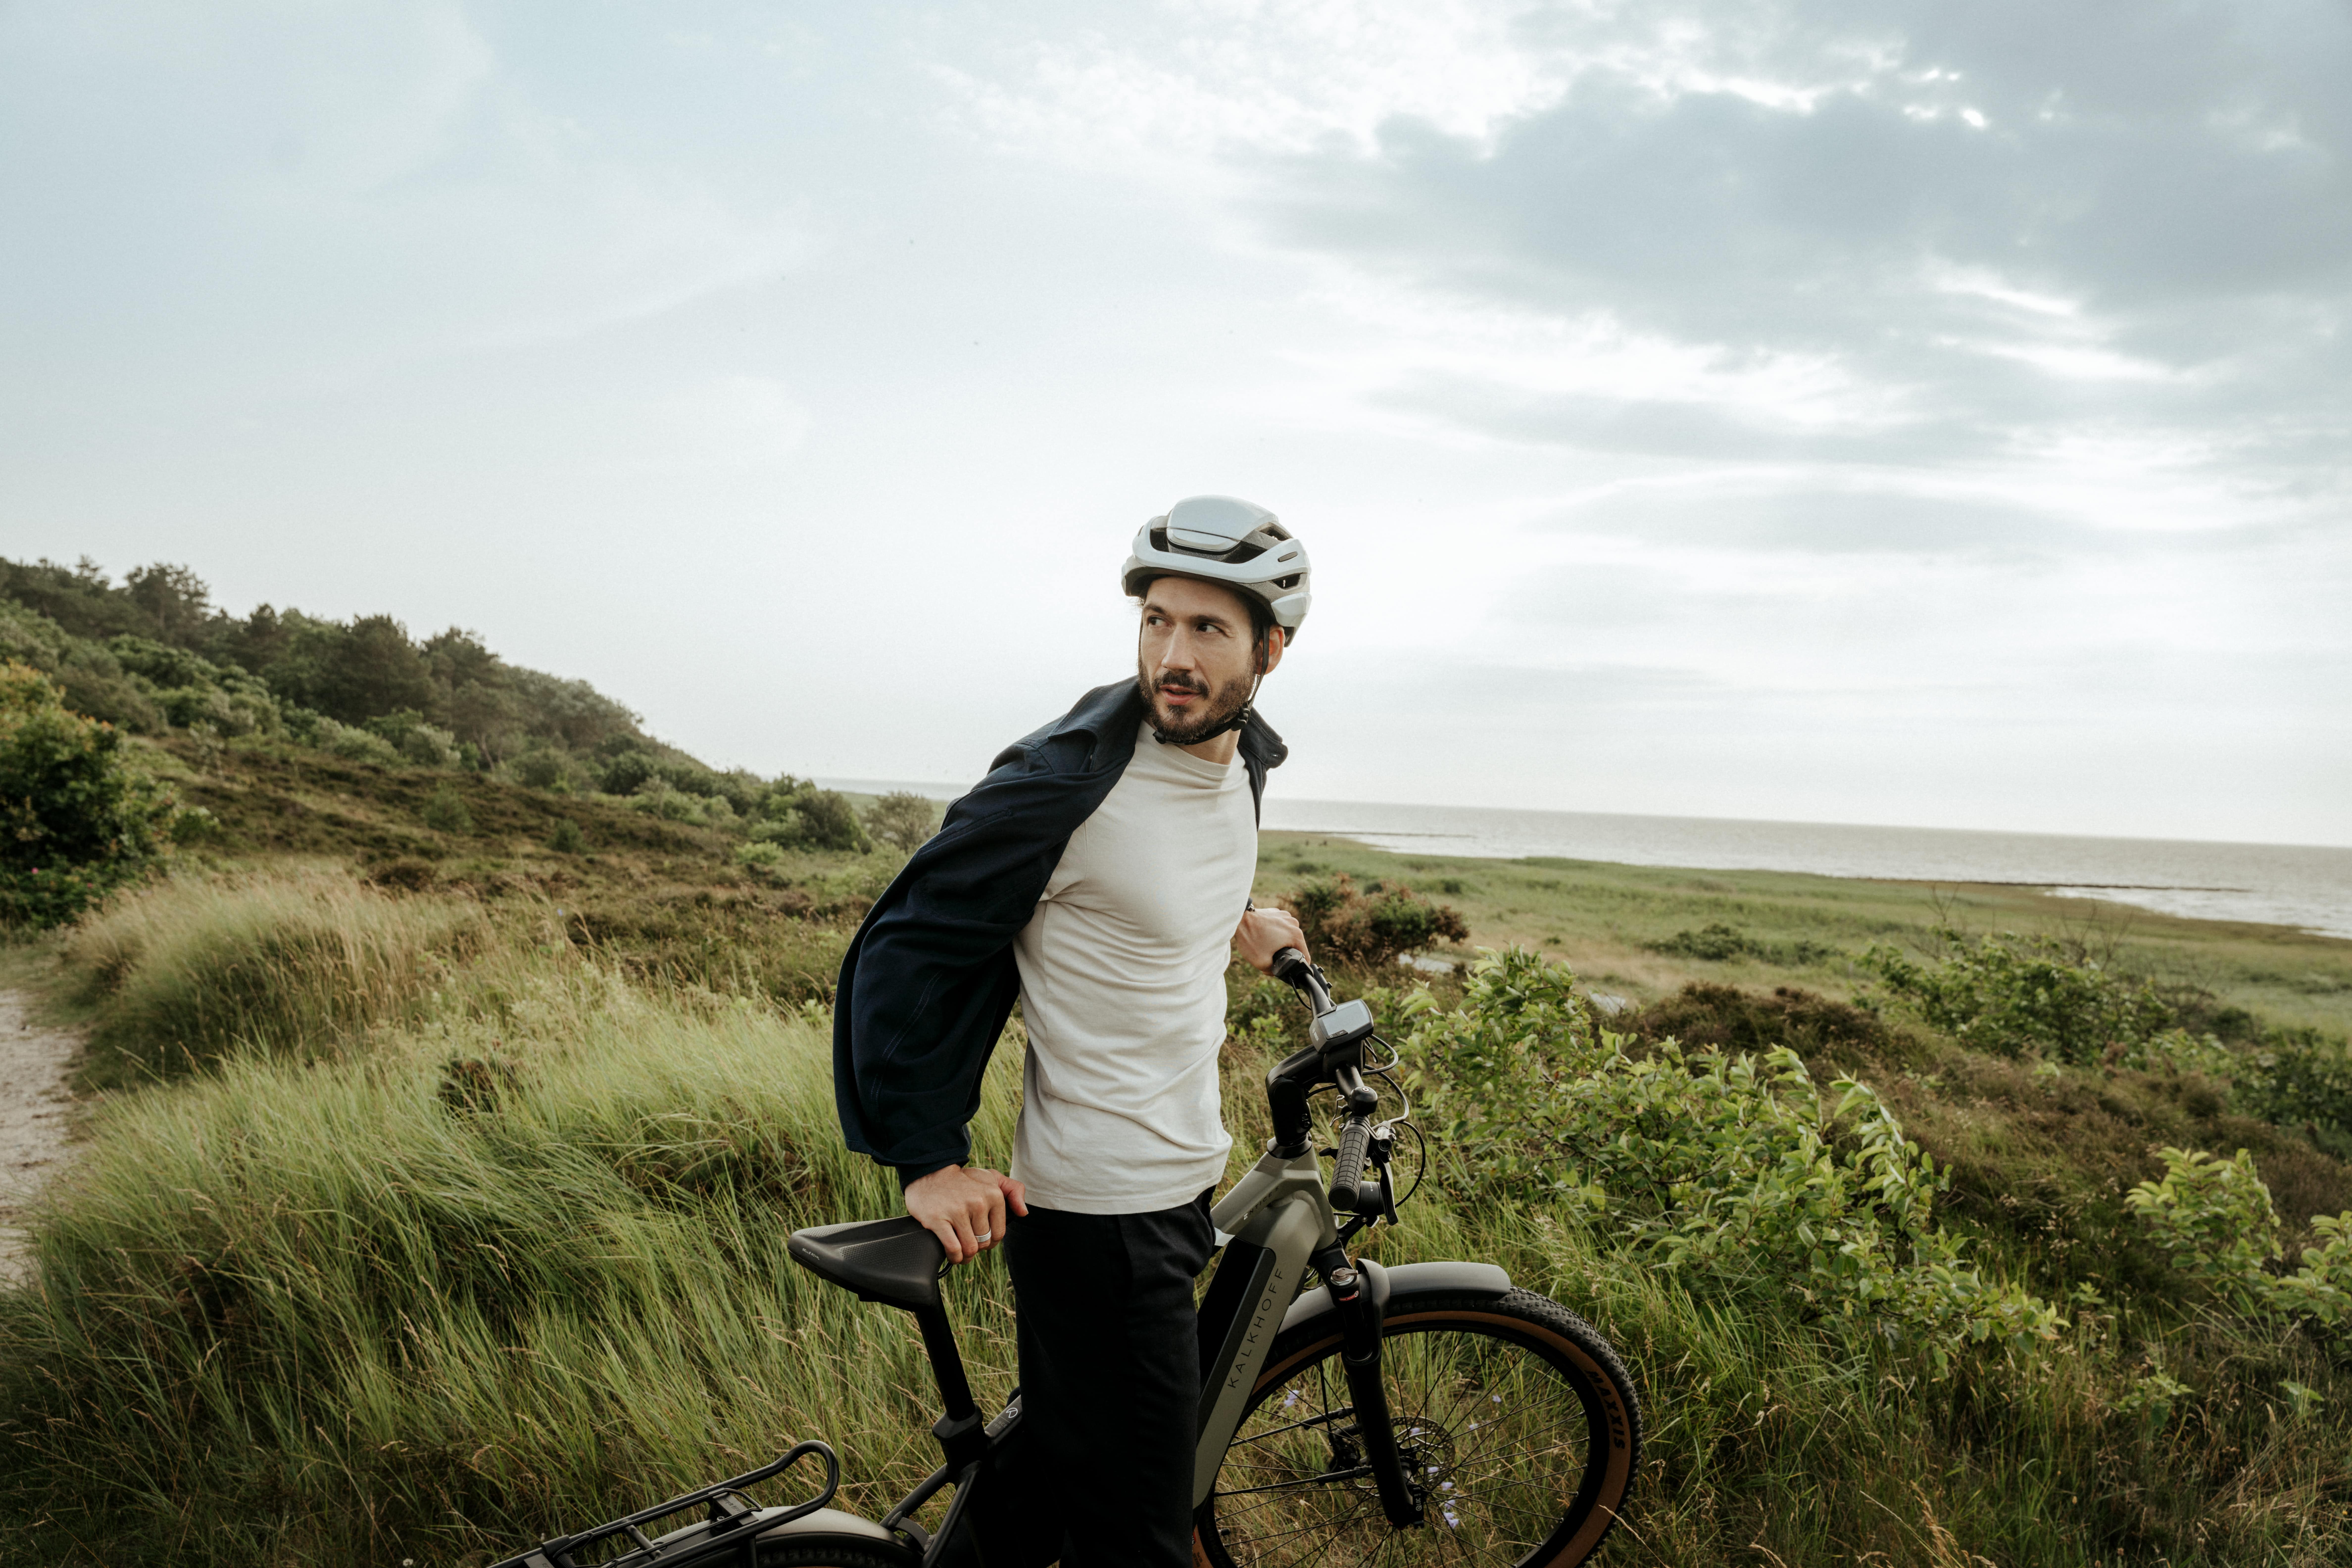 Mann mit Fahrrad in Dünenlandschaft blickt zurück